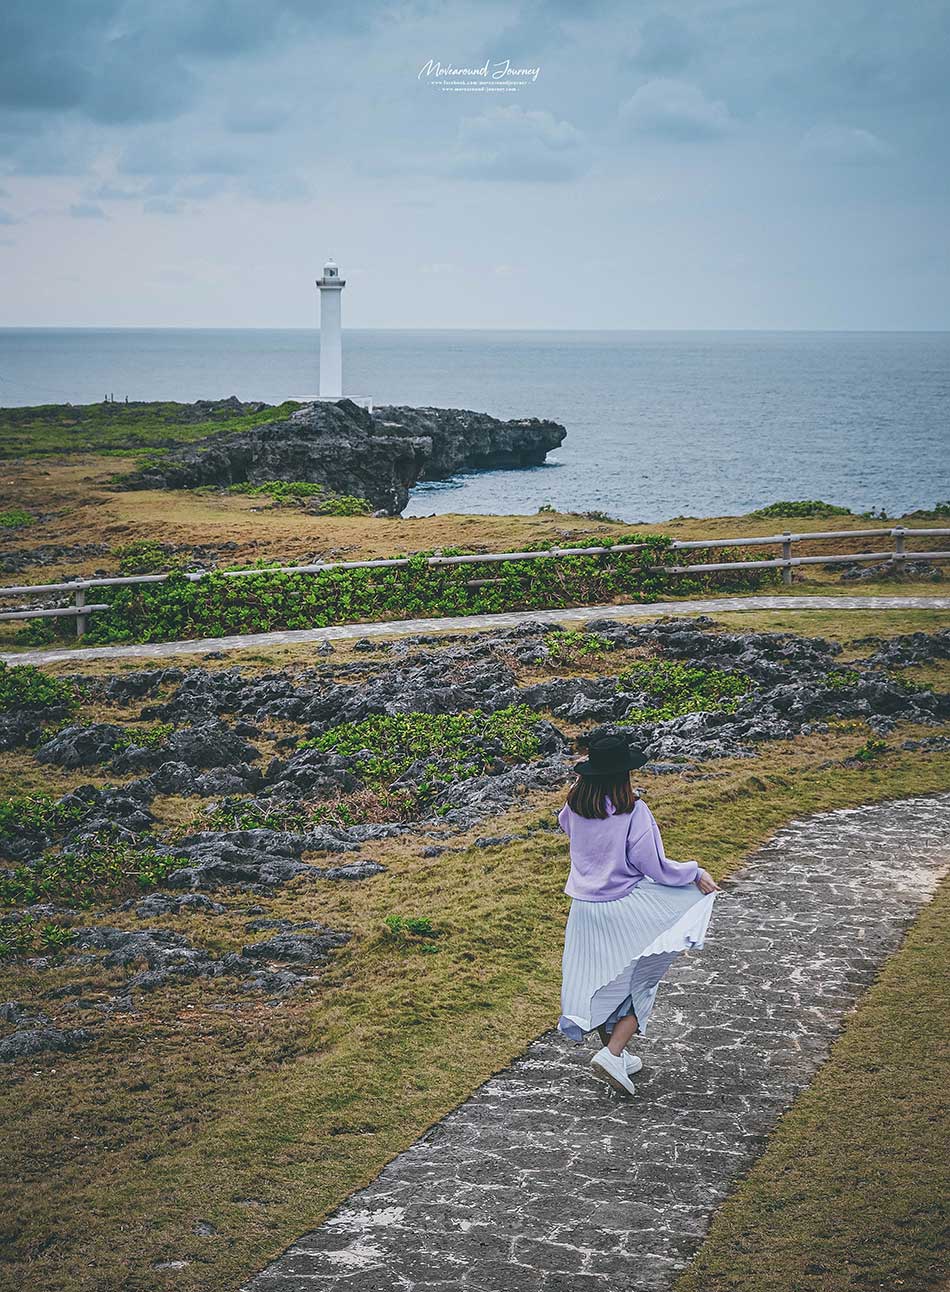 จุดถ่ายรูป โอกินาวา Okinawa photo spots